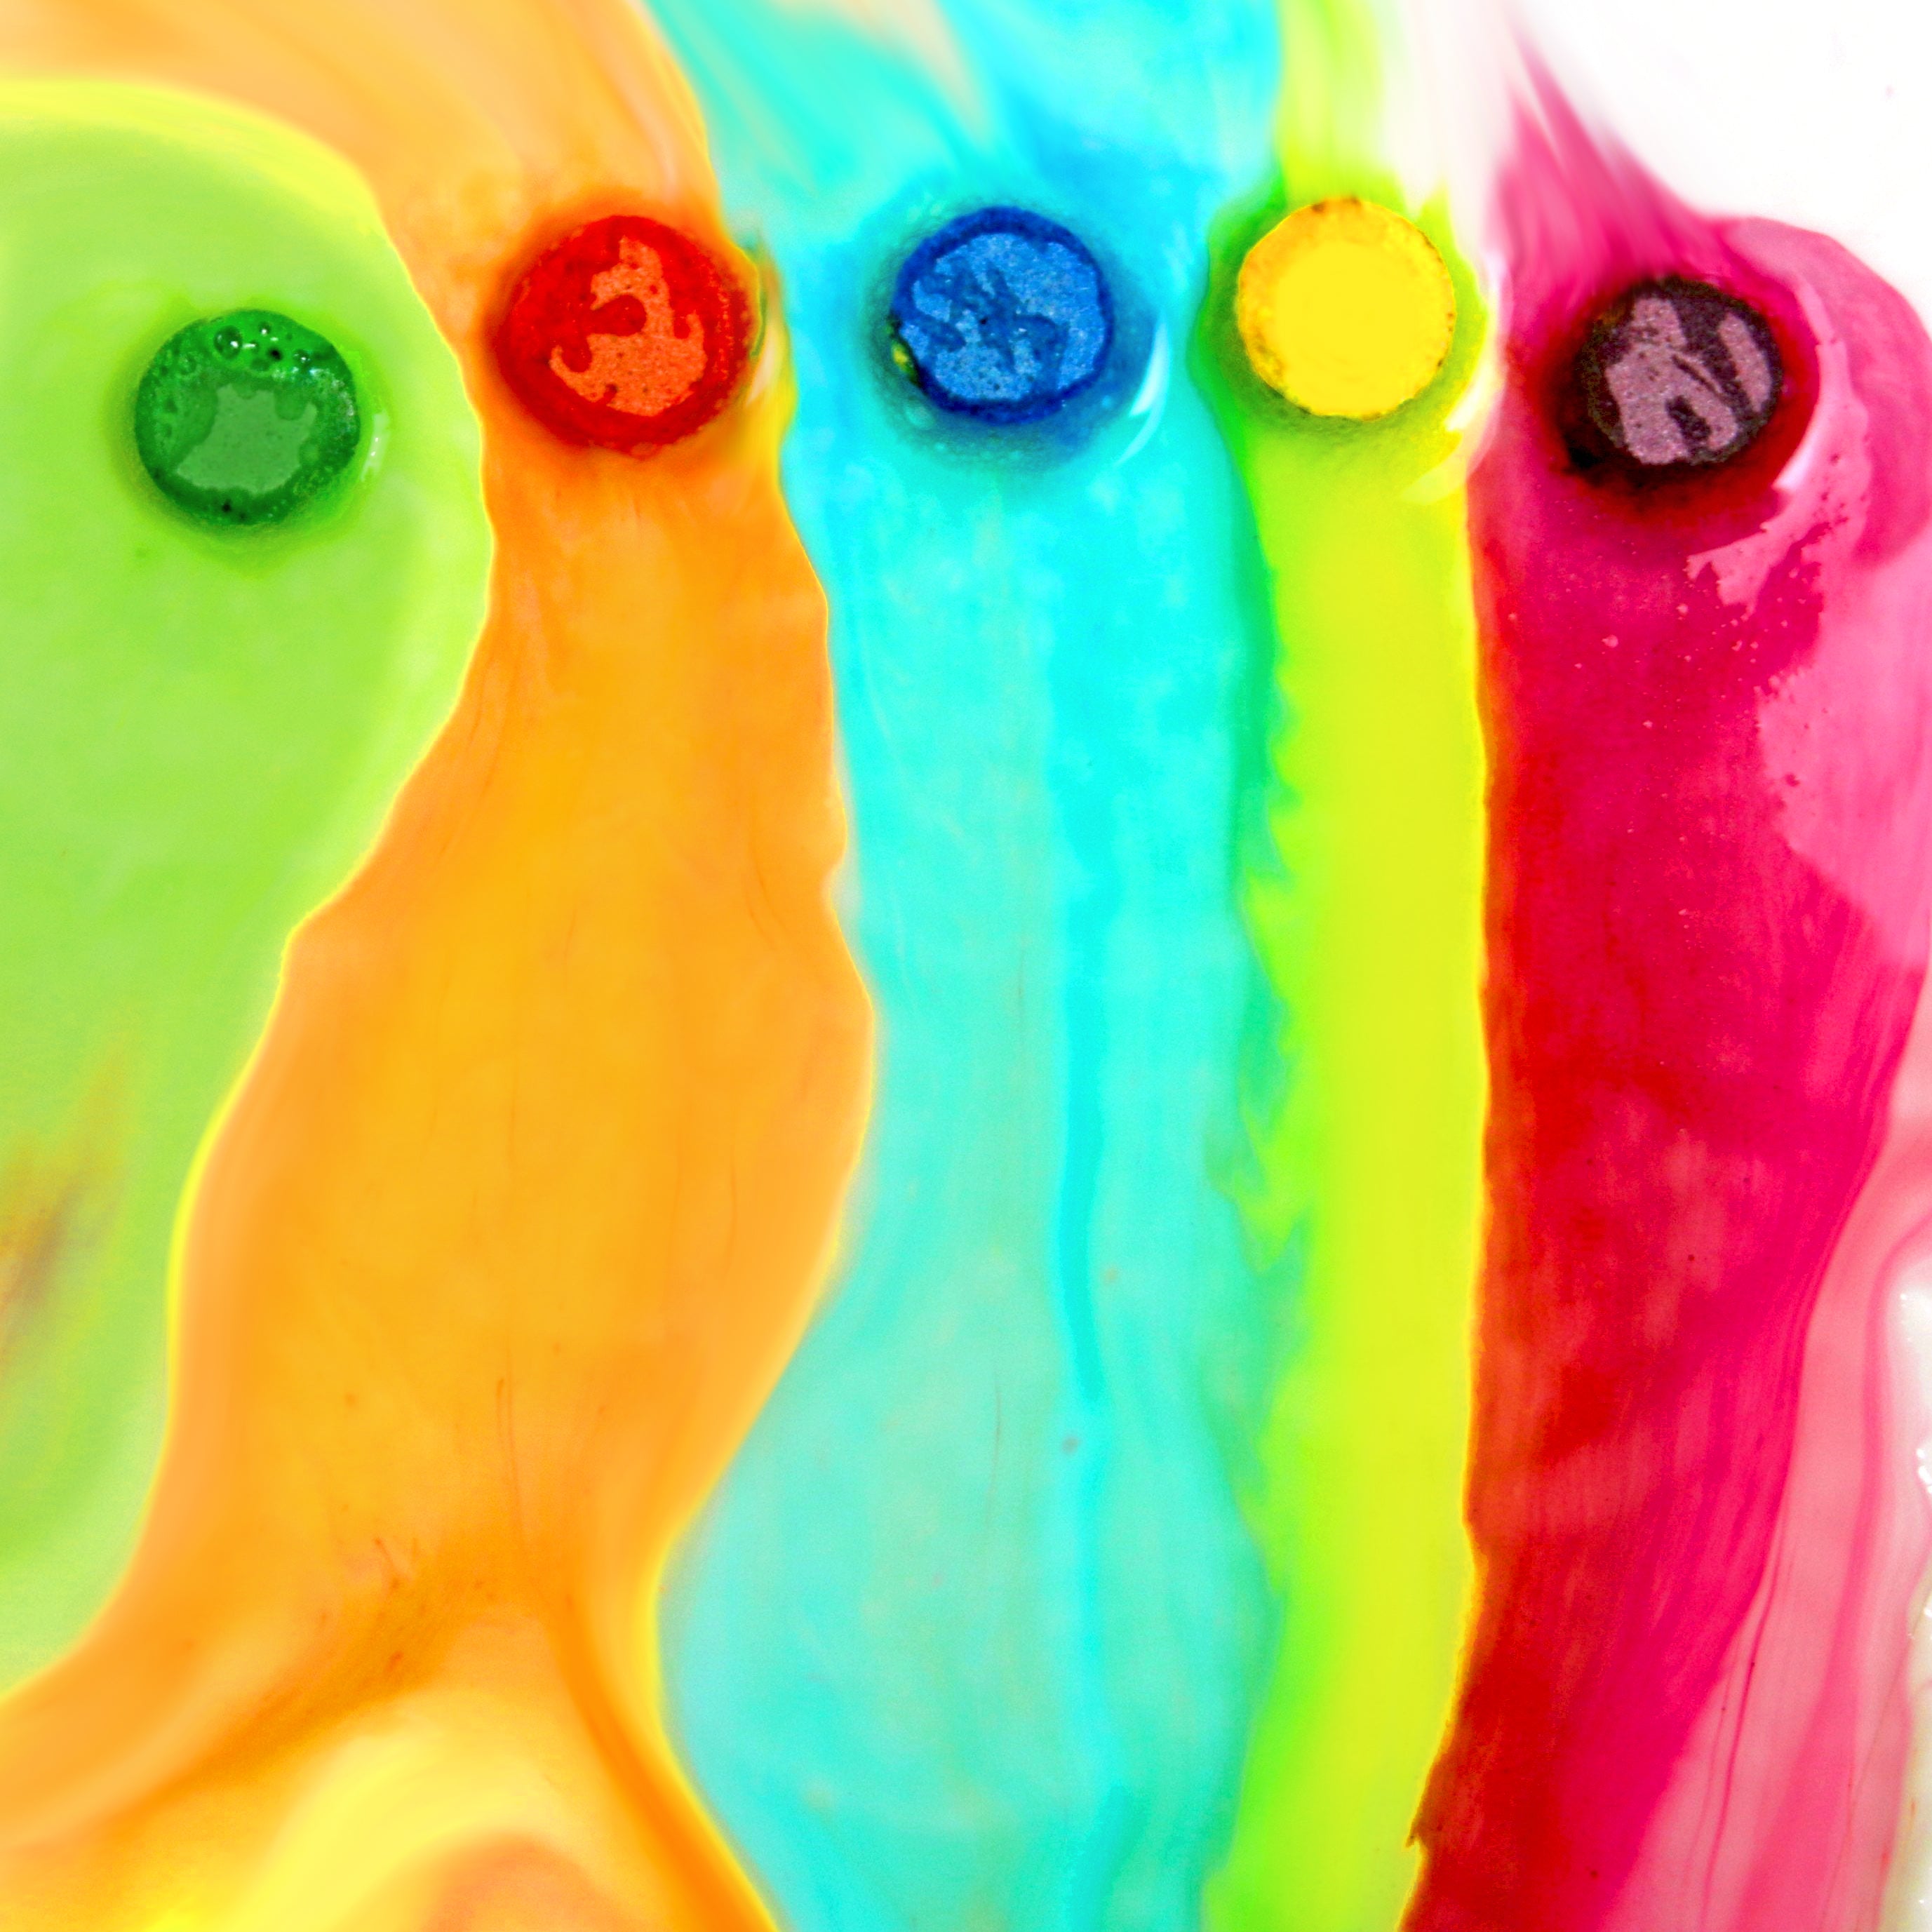 Mr. Bubble Fizzy Tub Colors, Tablets - 150 ea